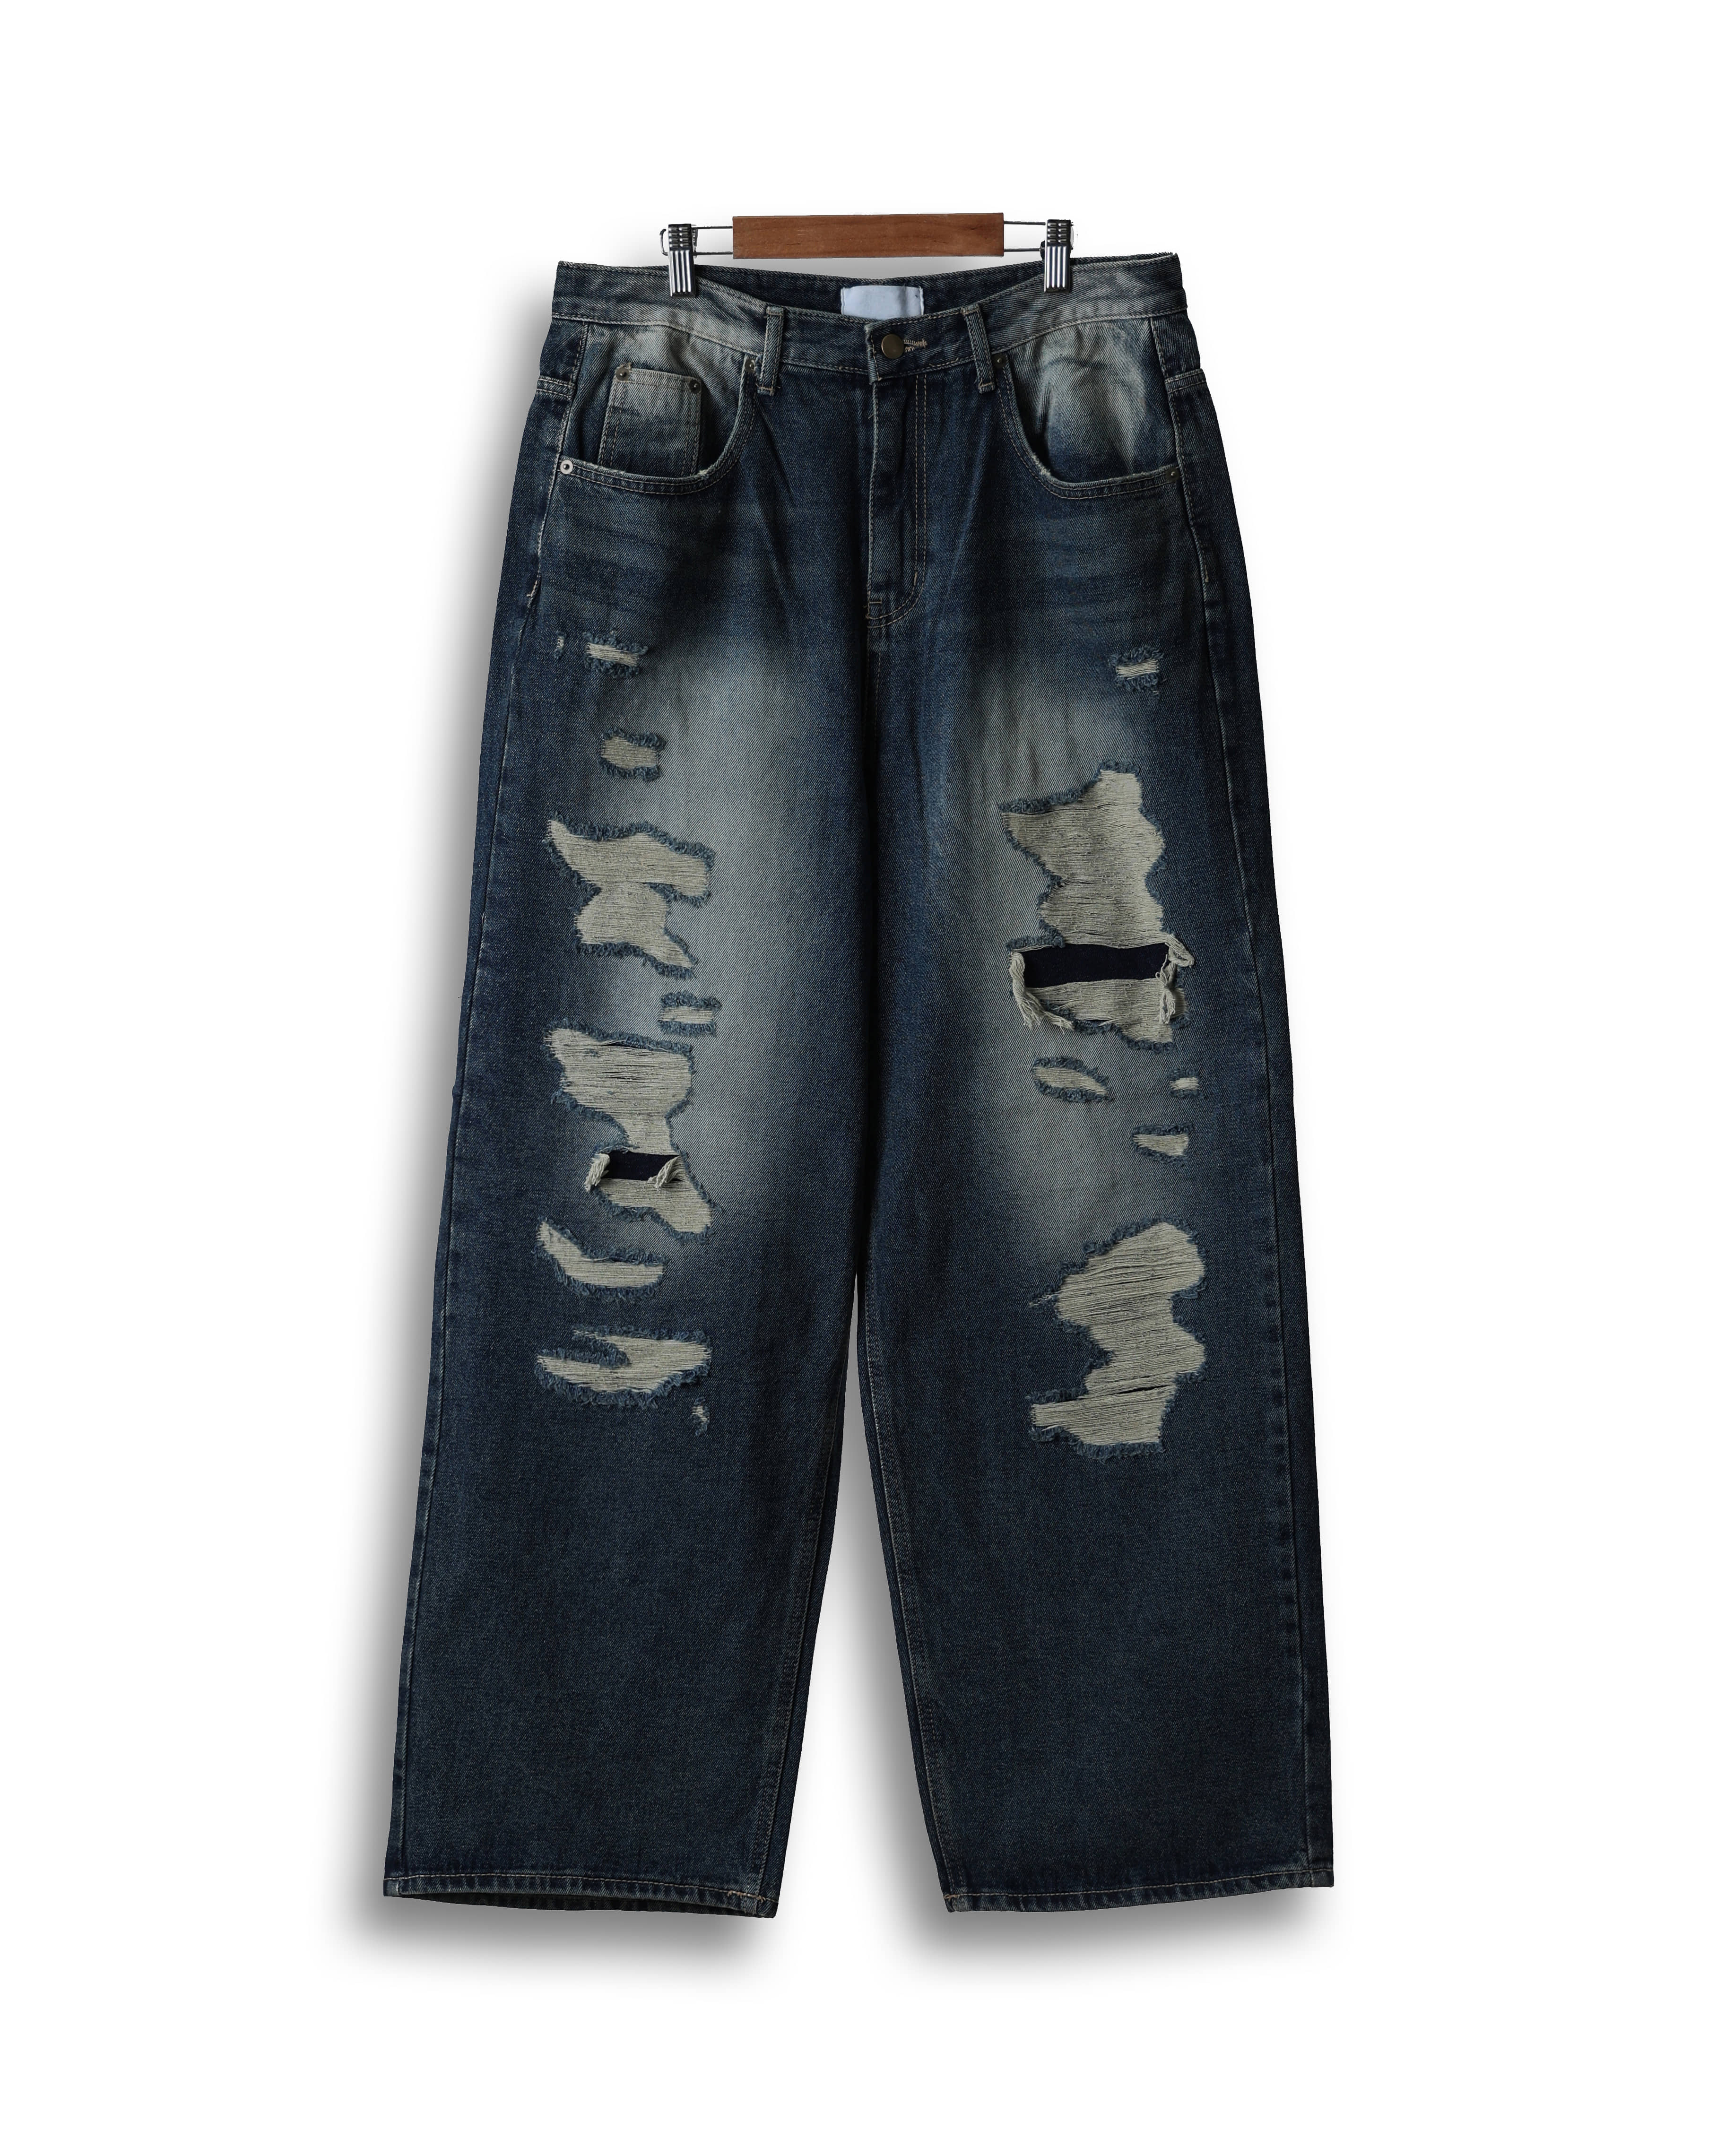 THIRD J Destroyed Vintage Denim Pants (Washed Denim)